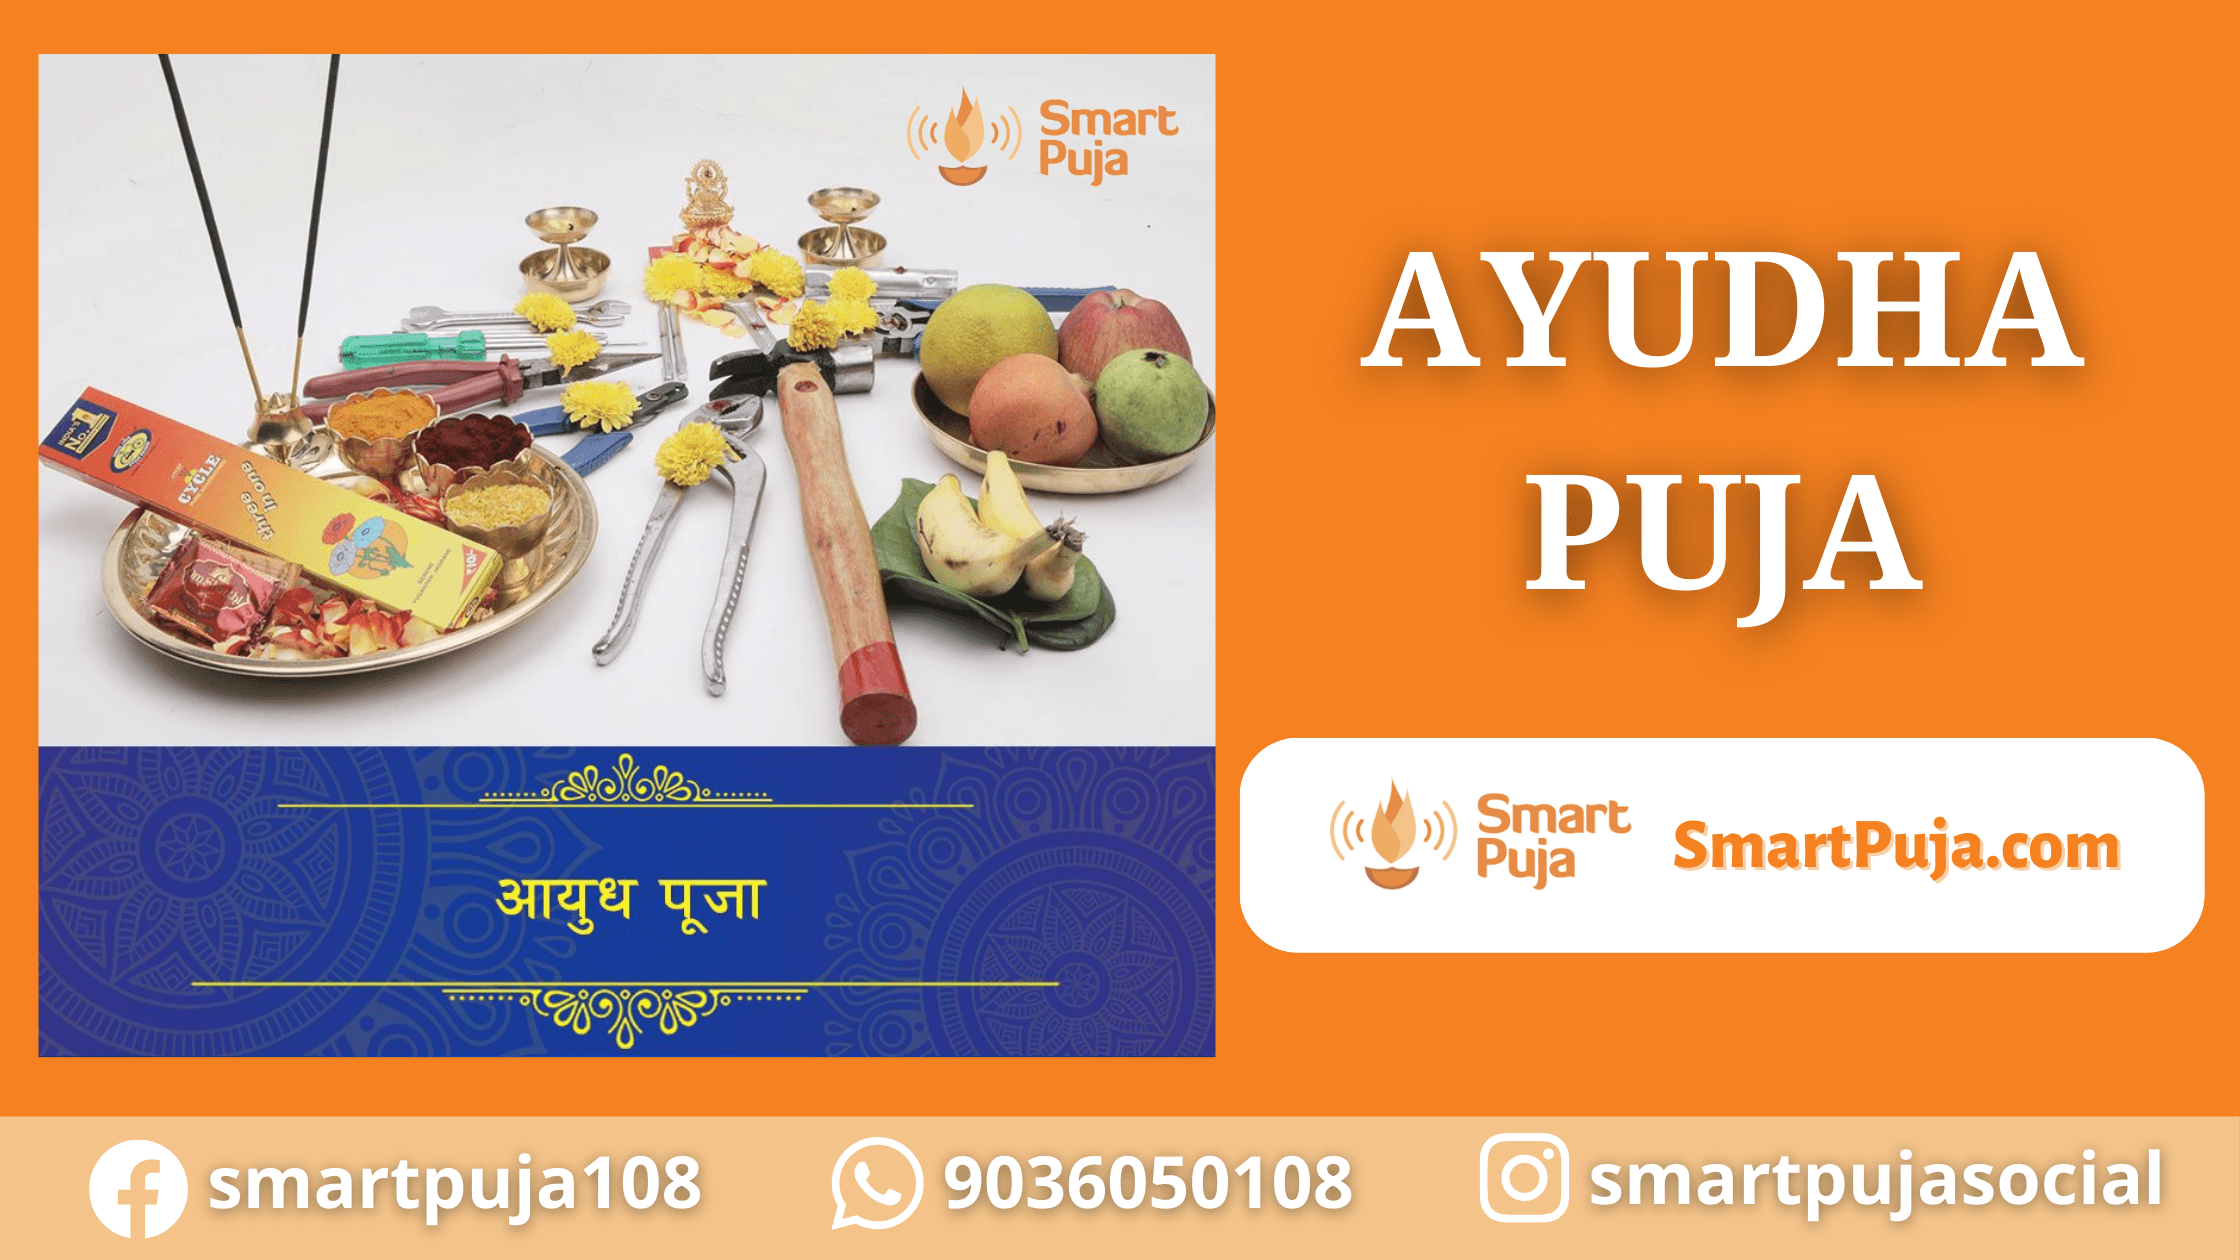 Ayudha Puja @smartpuja.com